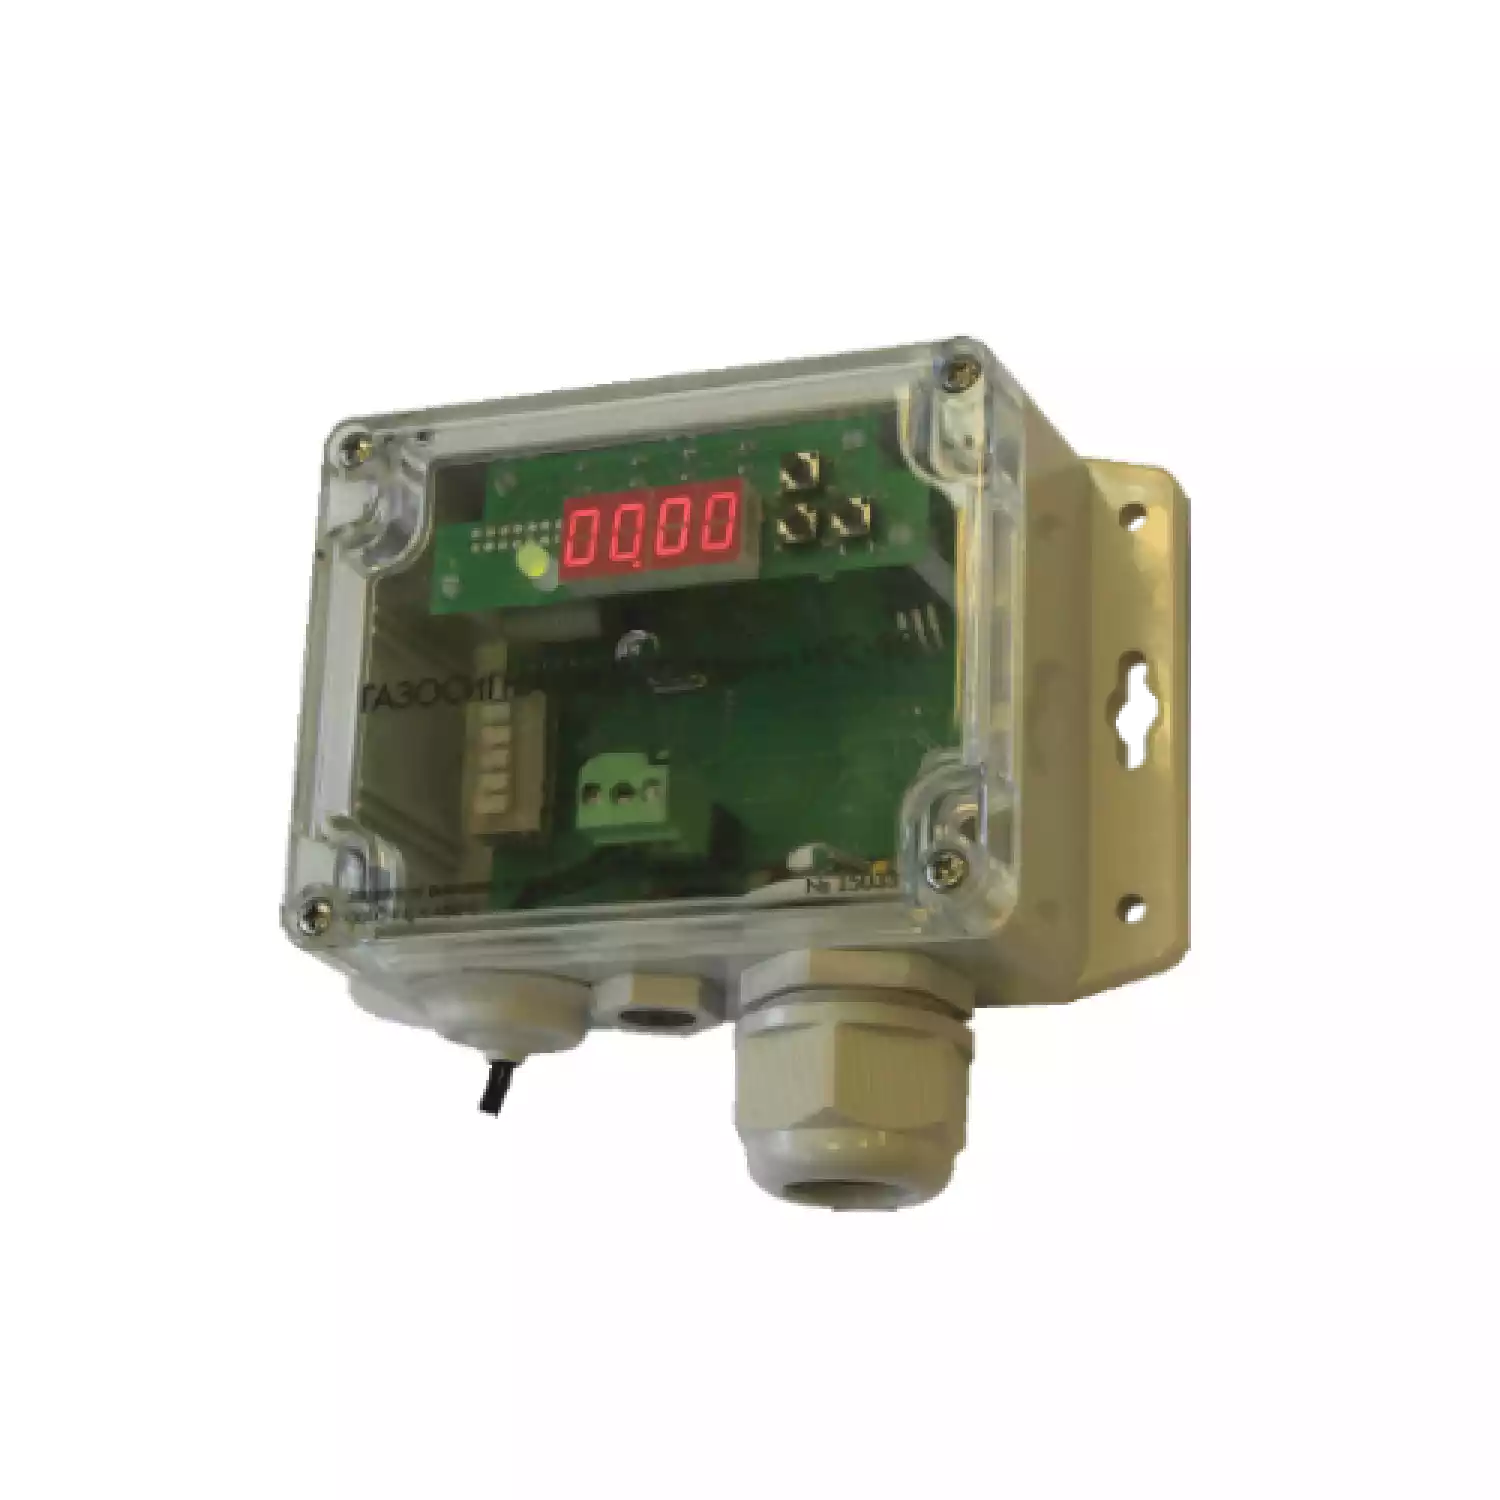 Хмель-СВ серии ИГС-98 газосигнализатор стационарный на хлор Cl2 исполнение 011 - 1